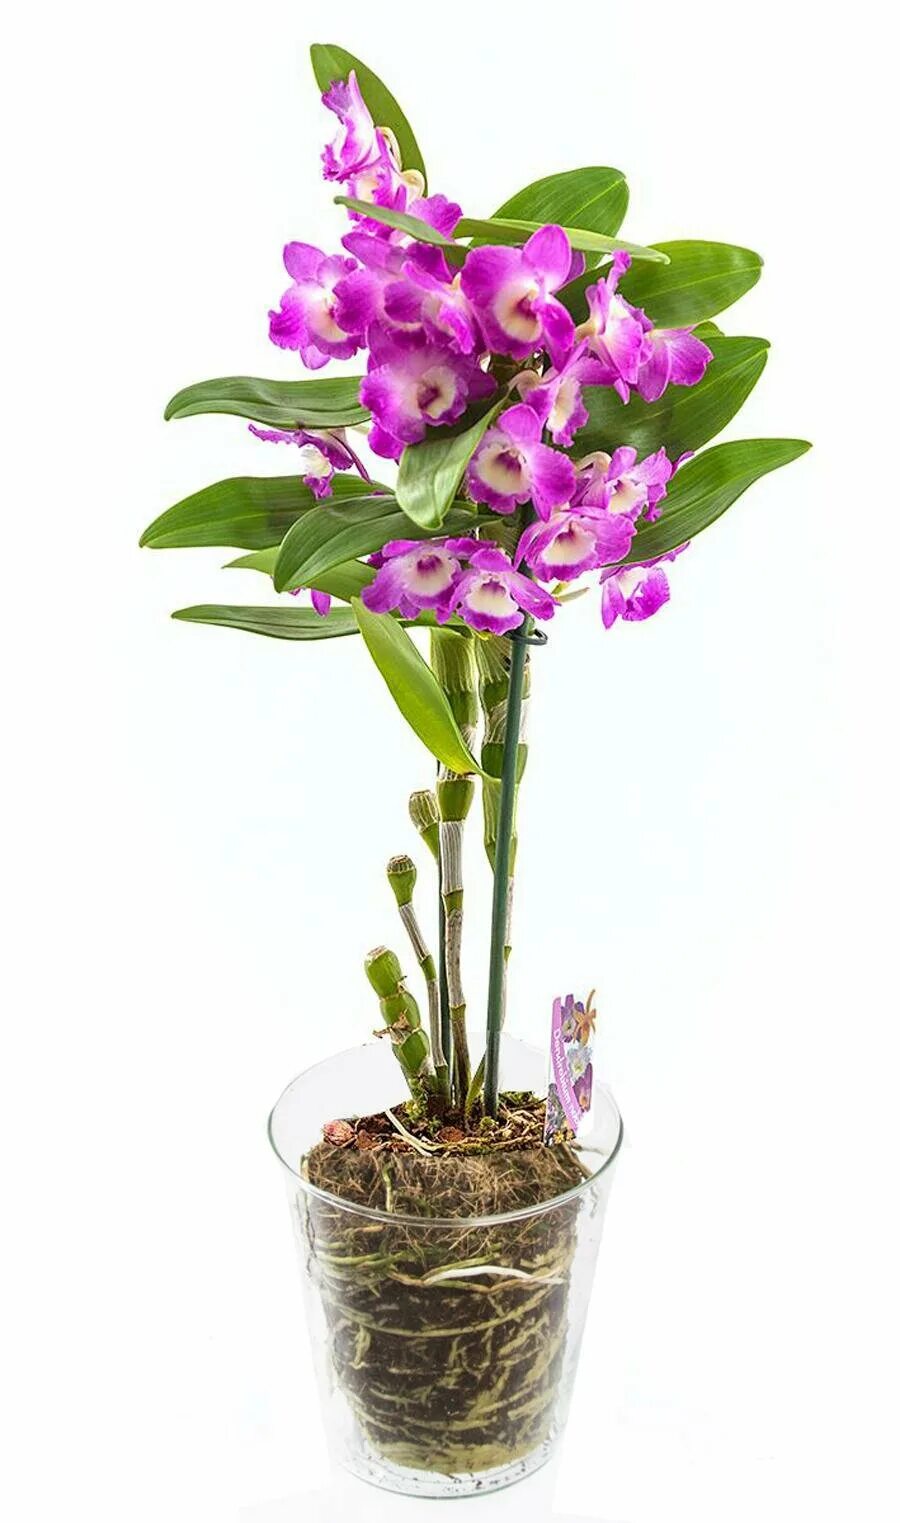 Орхидея Дендробиум Нобиле. Орхидея Dendrobium Nobile. Орхидея дегдробиум набухла. Цветок Дендробиум Нобиле.